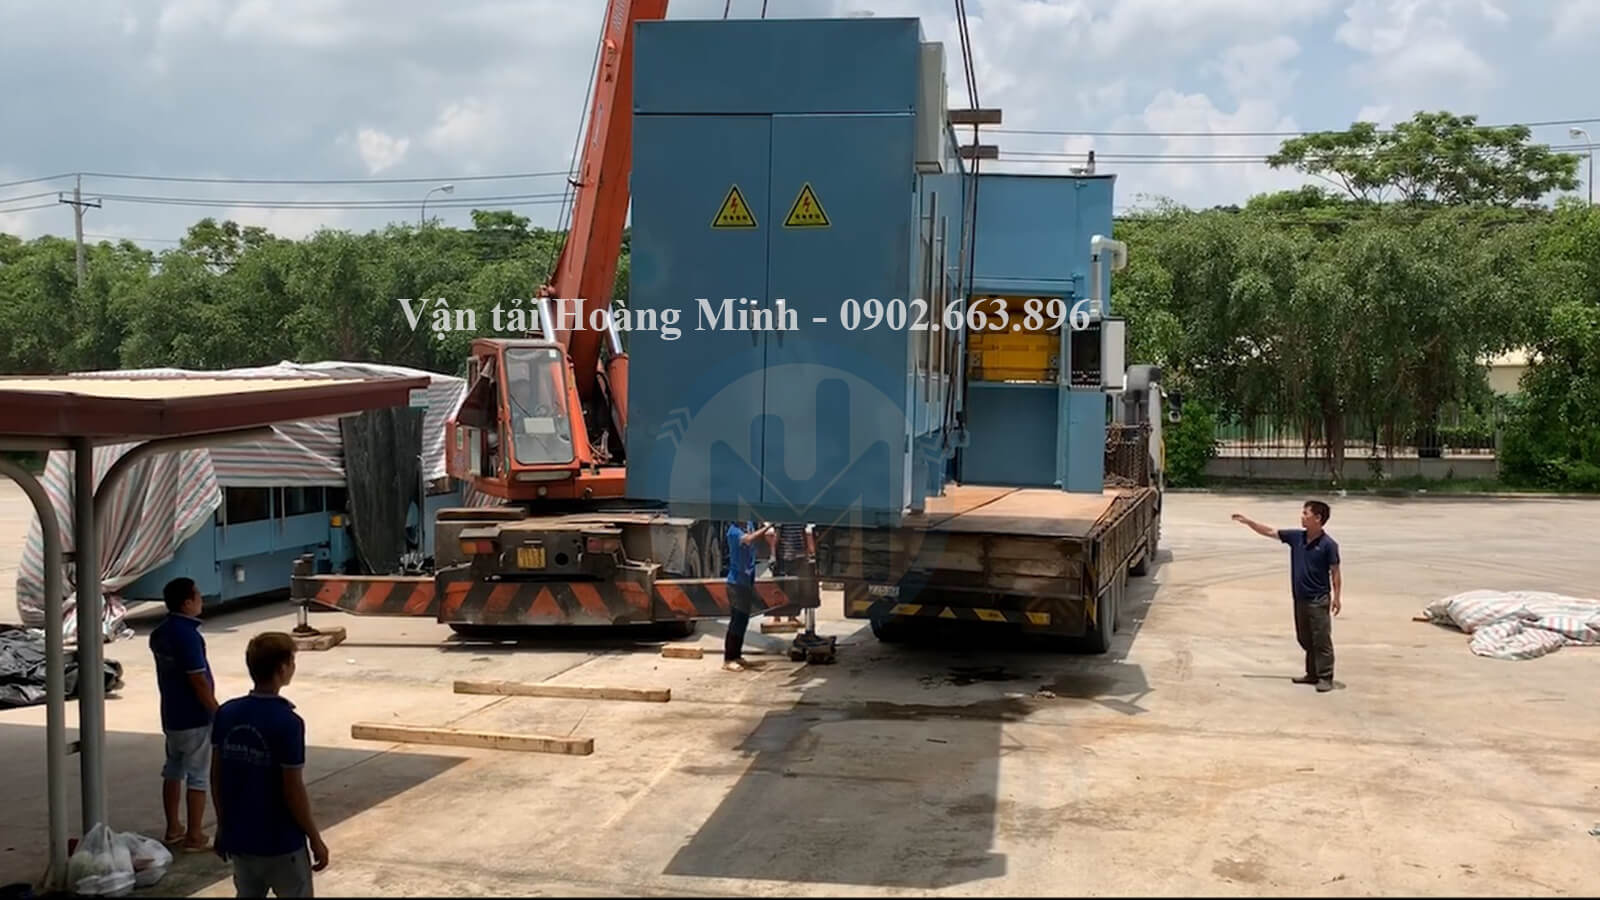 Hình ảnh vận chuyển nhà xưởng bằng xe cẩu kato chuyên dụng cho khách hàng tại Bà Rịa Vũng Tàu